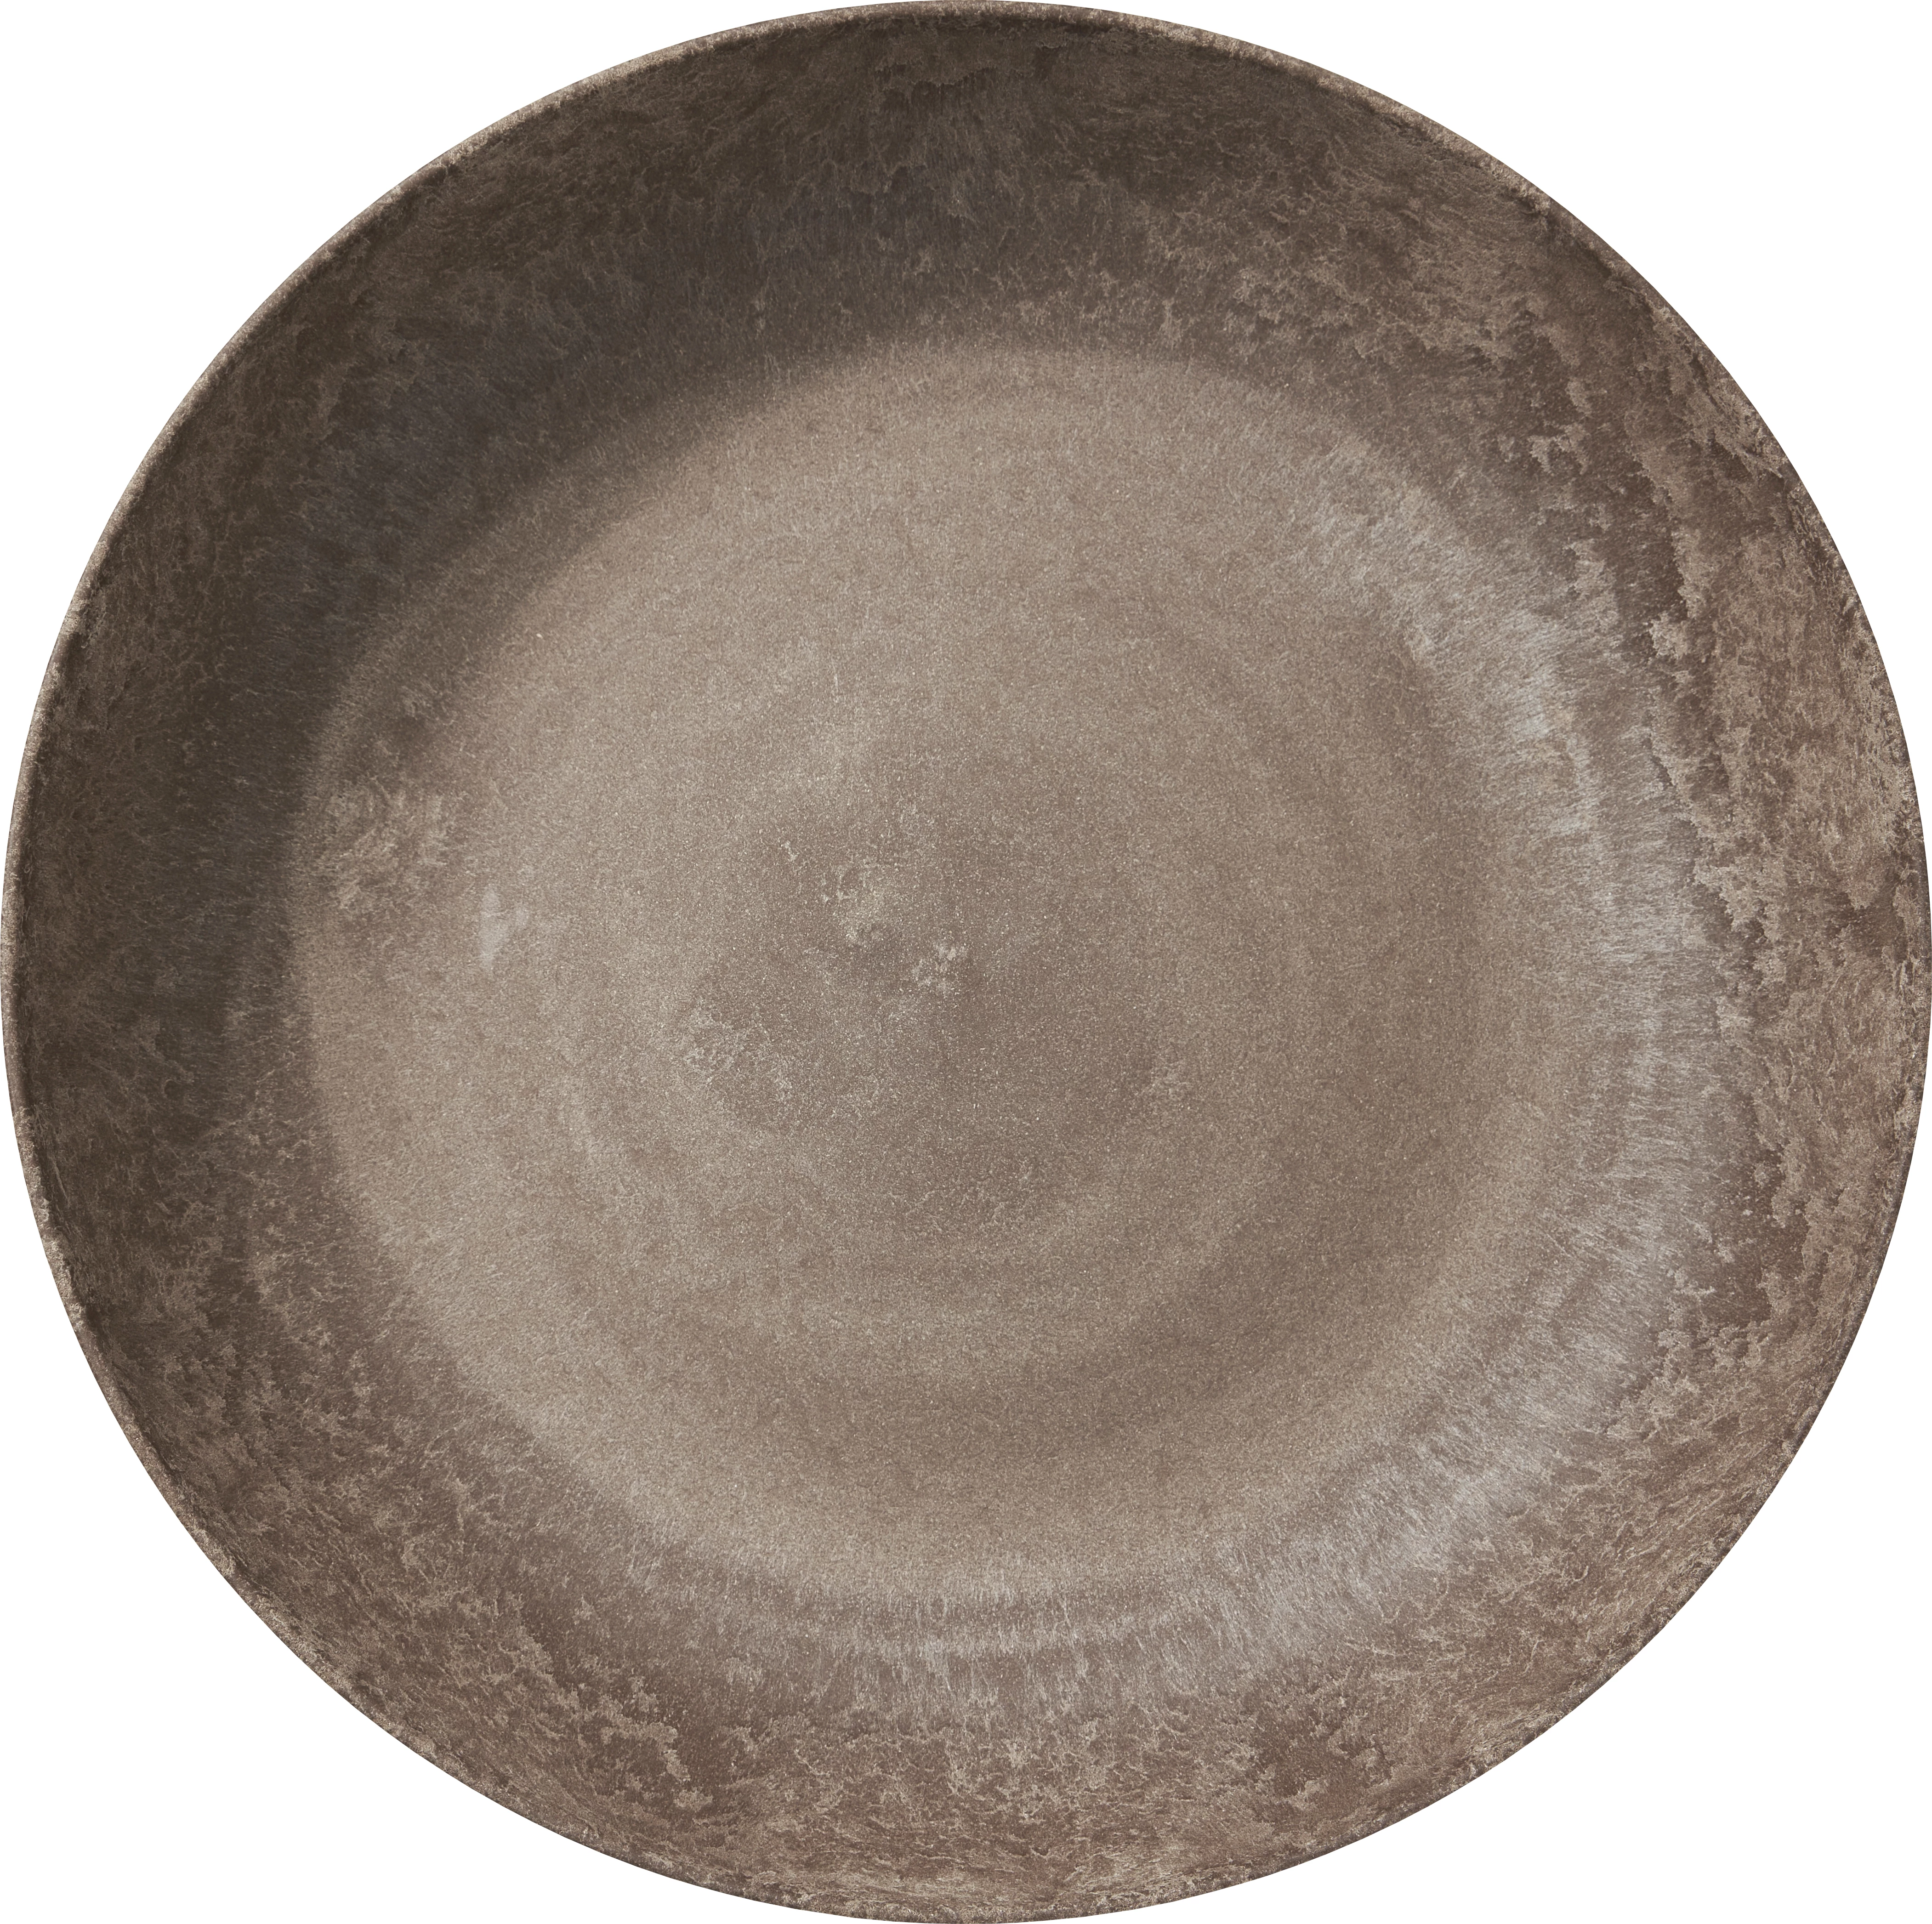 Luups skål, brun, 600 cl, ø39 cm